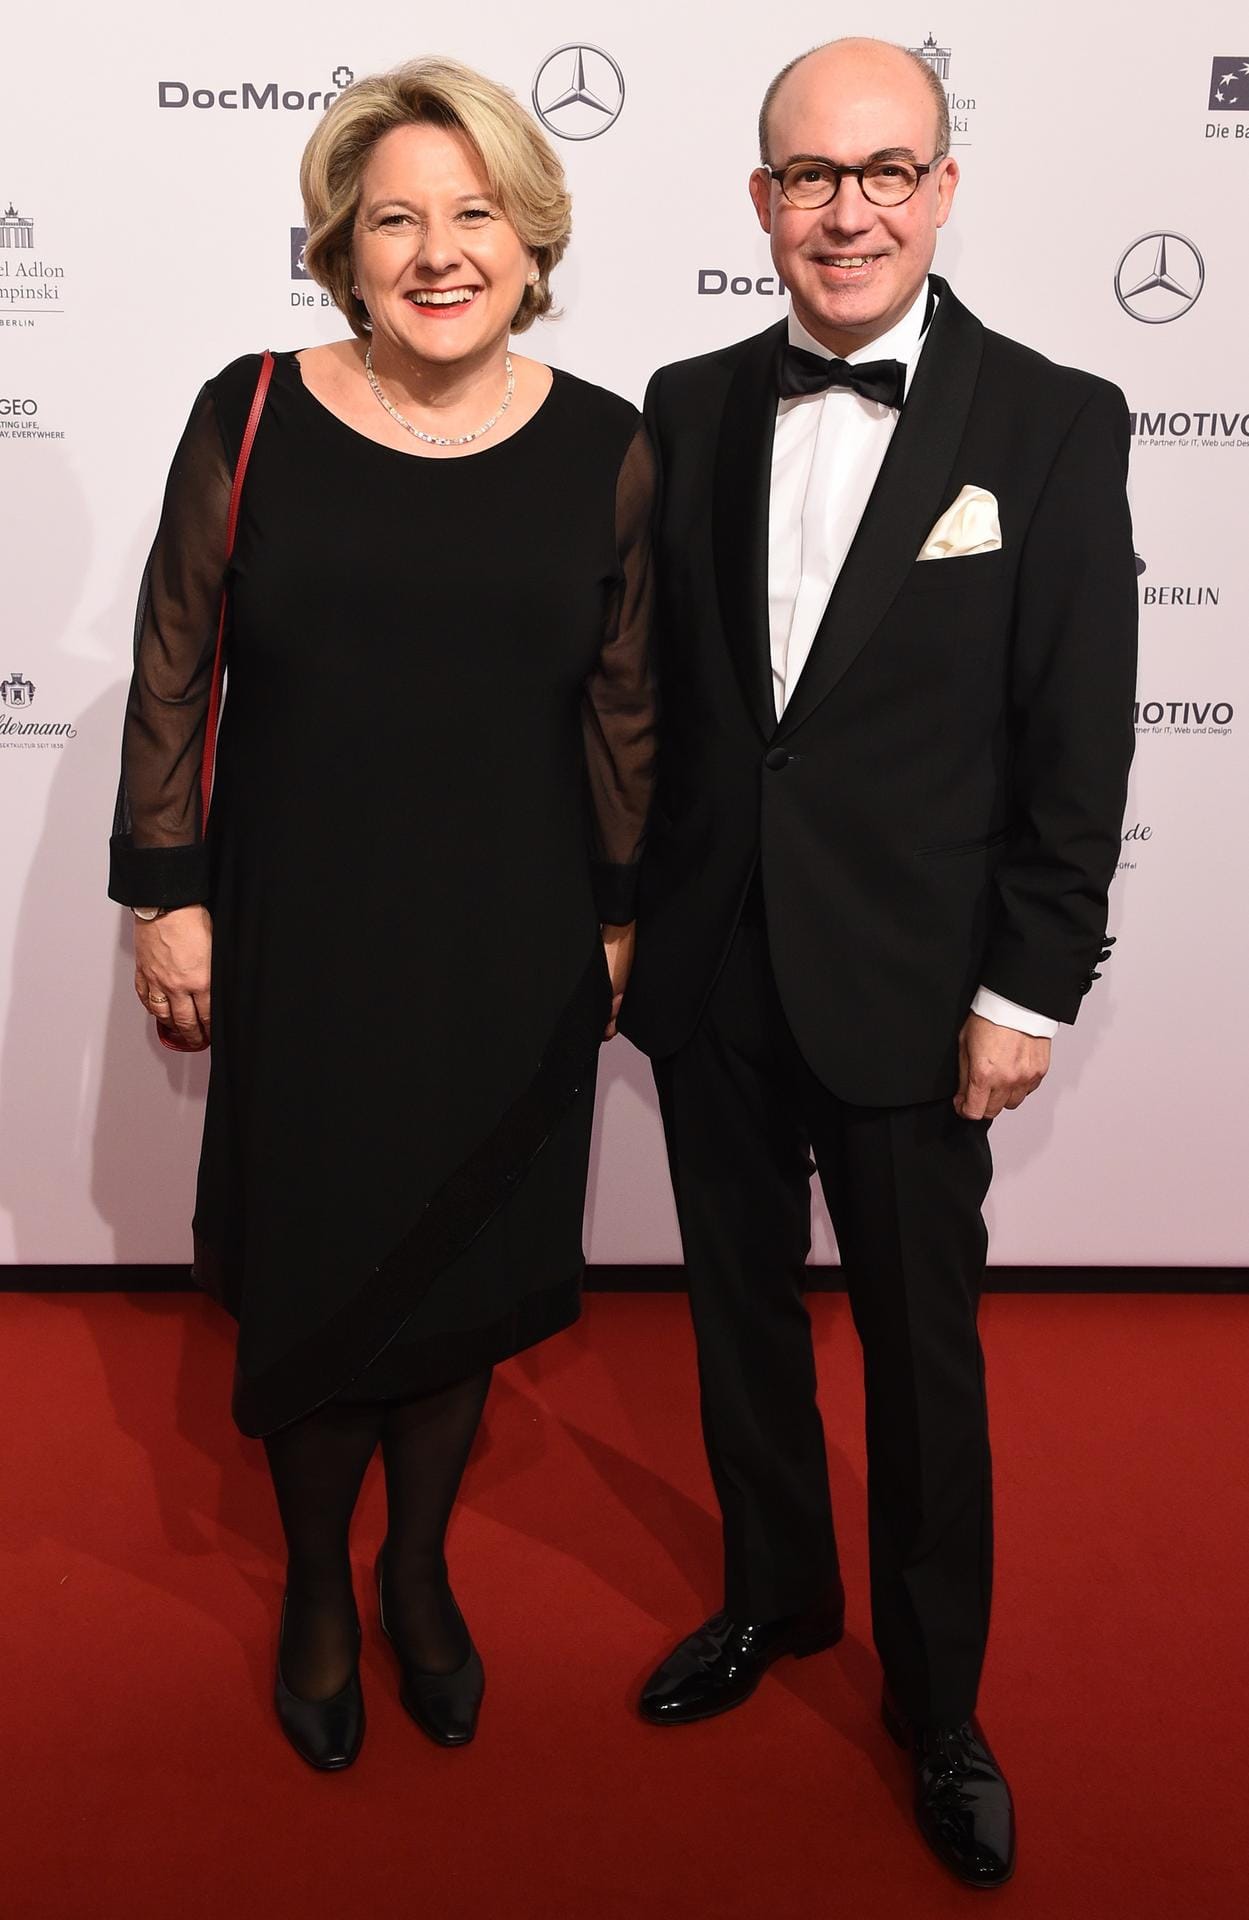 Die Bundesministerin für Umwelt, Naturschutz und nukleare Sicherheit Svenja Schulze (SPD) mit ihrem Lebensgefährten Andrea Arcais